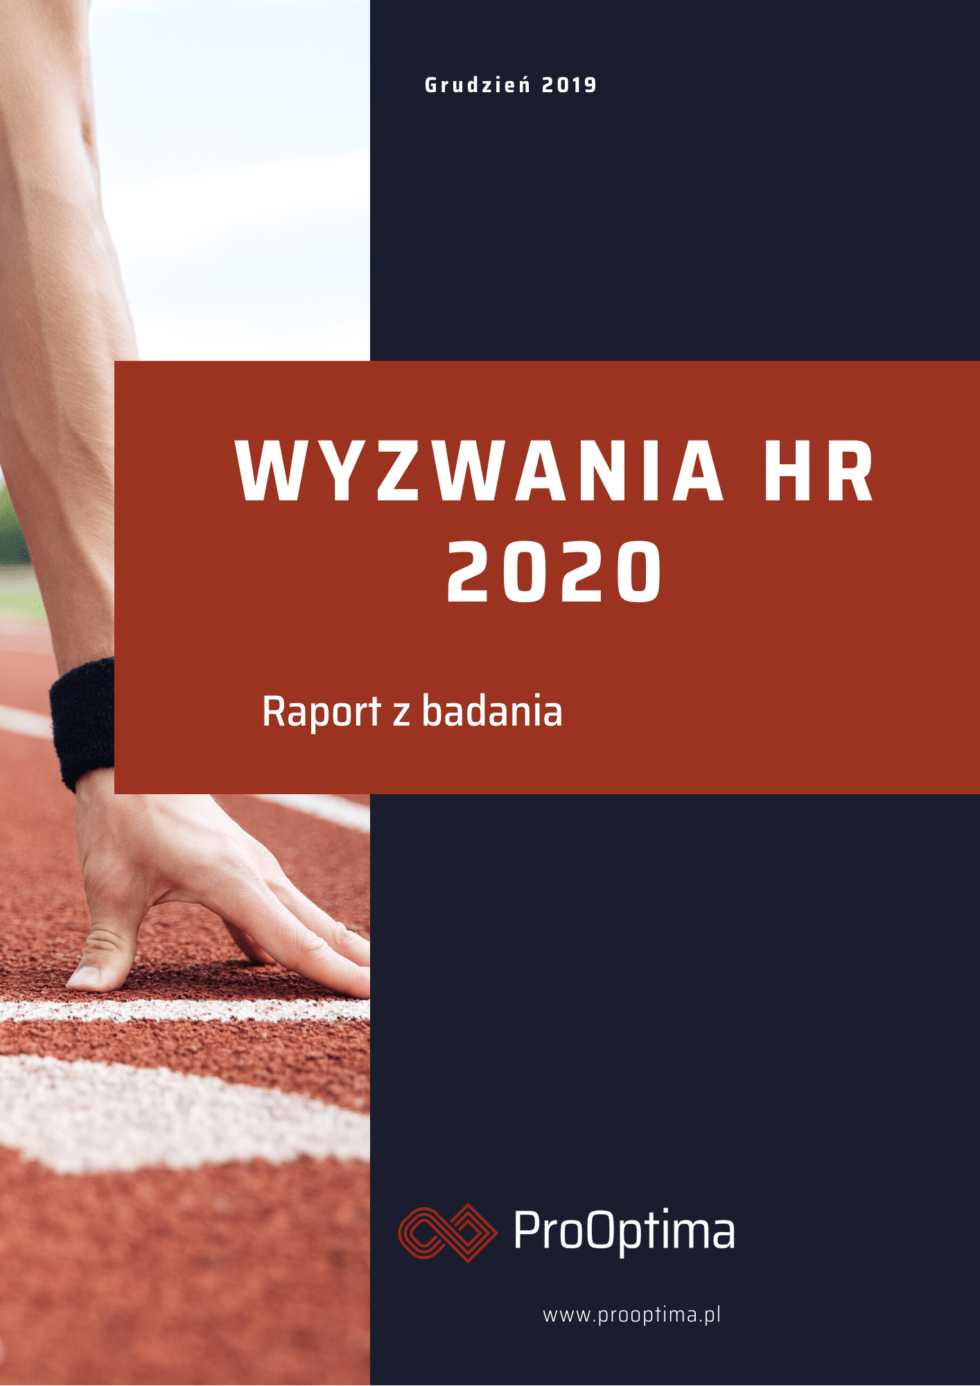 Wyzwania HR 2020 - raport ProOptima